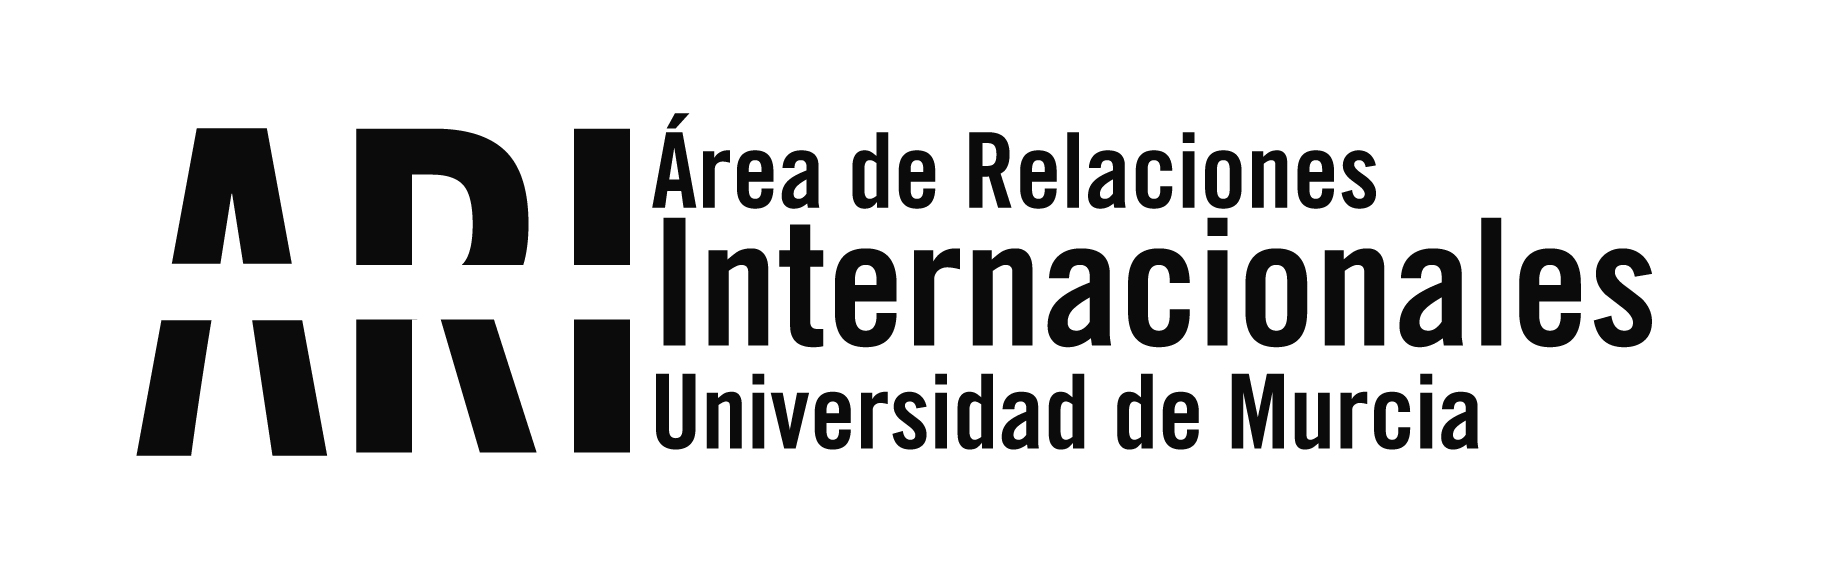 Sesiones de orientación online para los nuevos estudiantes internacionales de la UMU 2020-21 - Área de Relaciones Internacionales